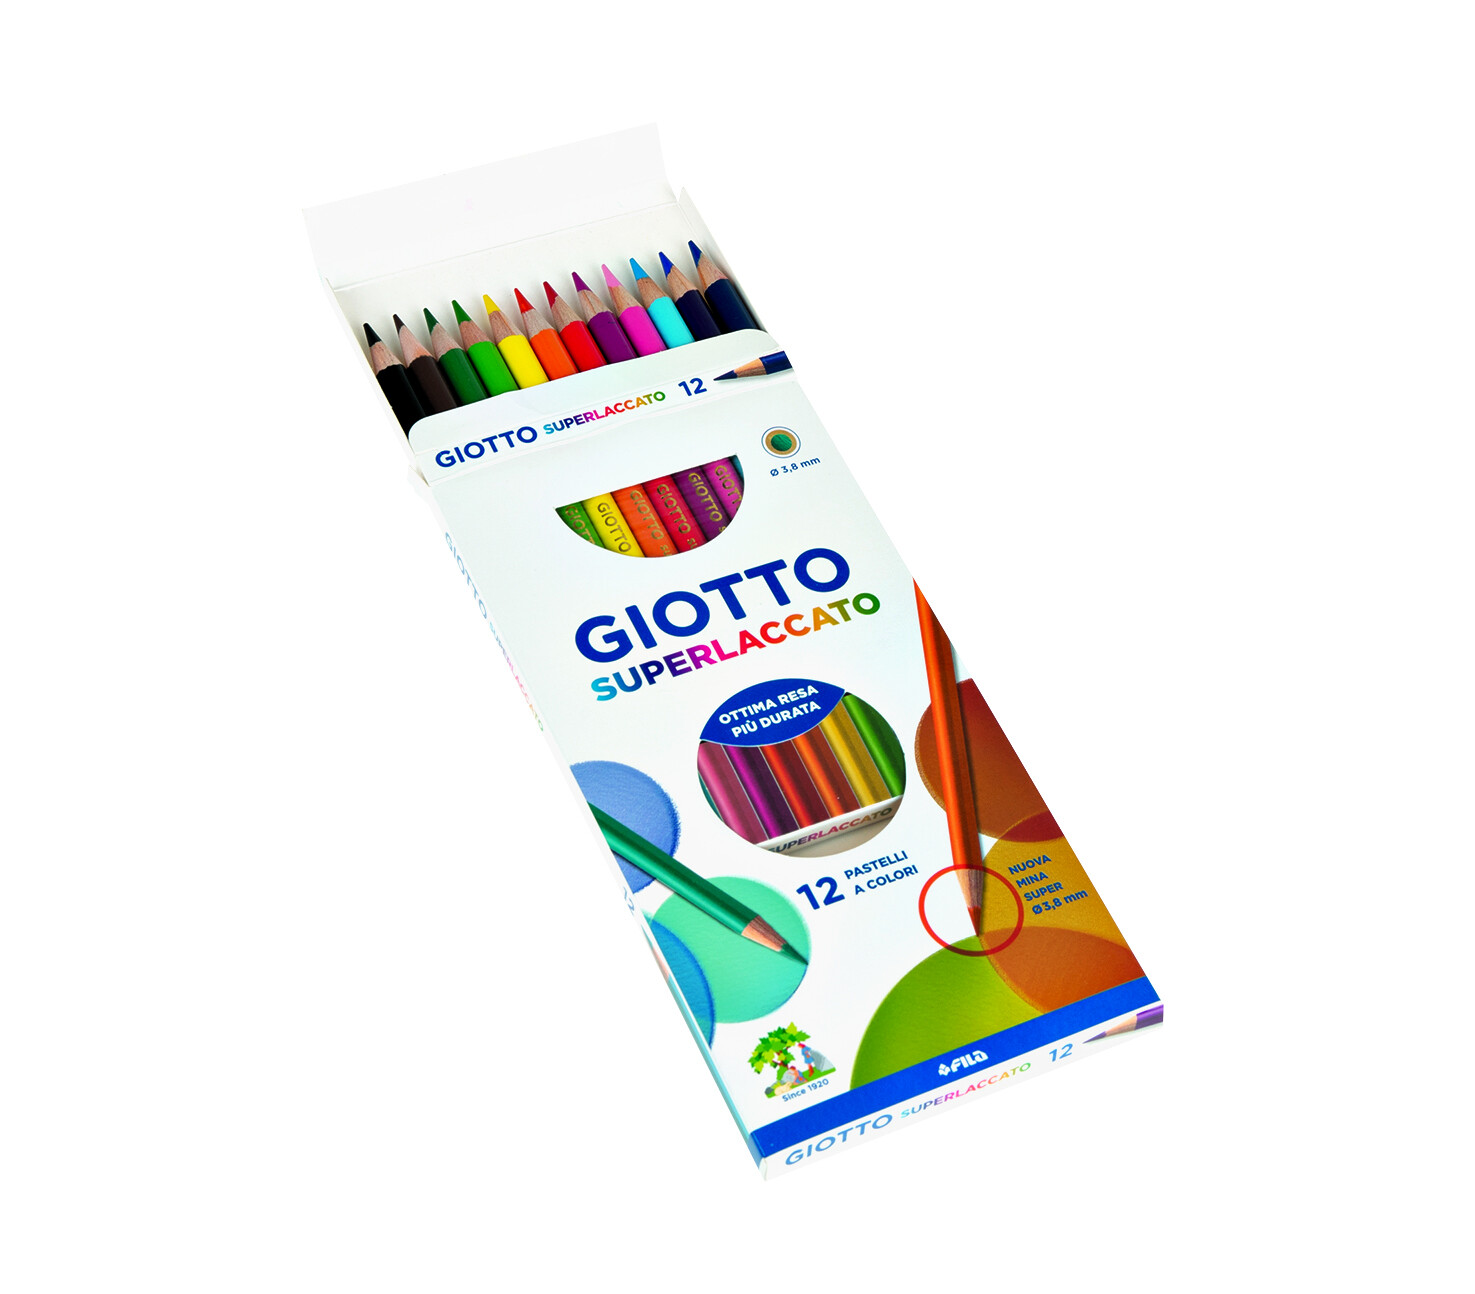 Giotto superlaccato - confezione 12 pastelli colorati - GIOTTO